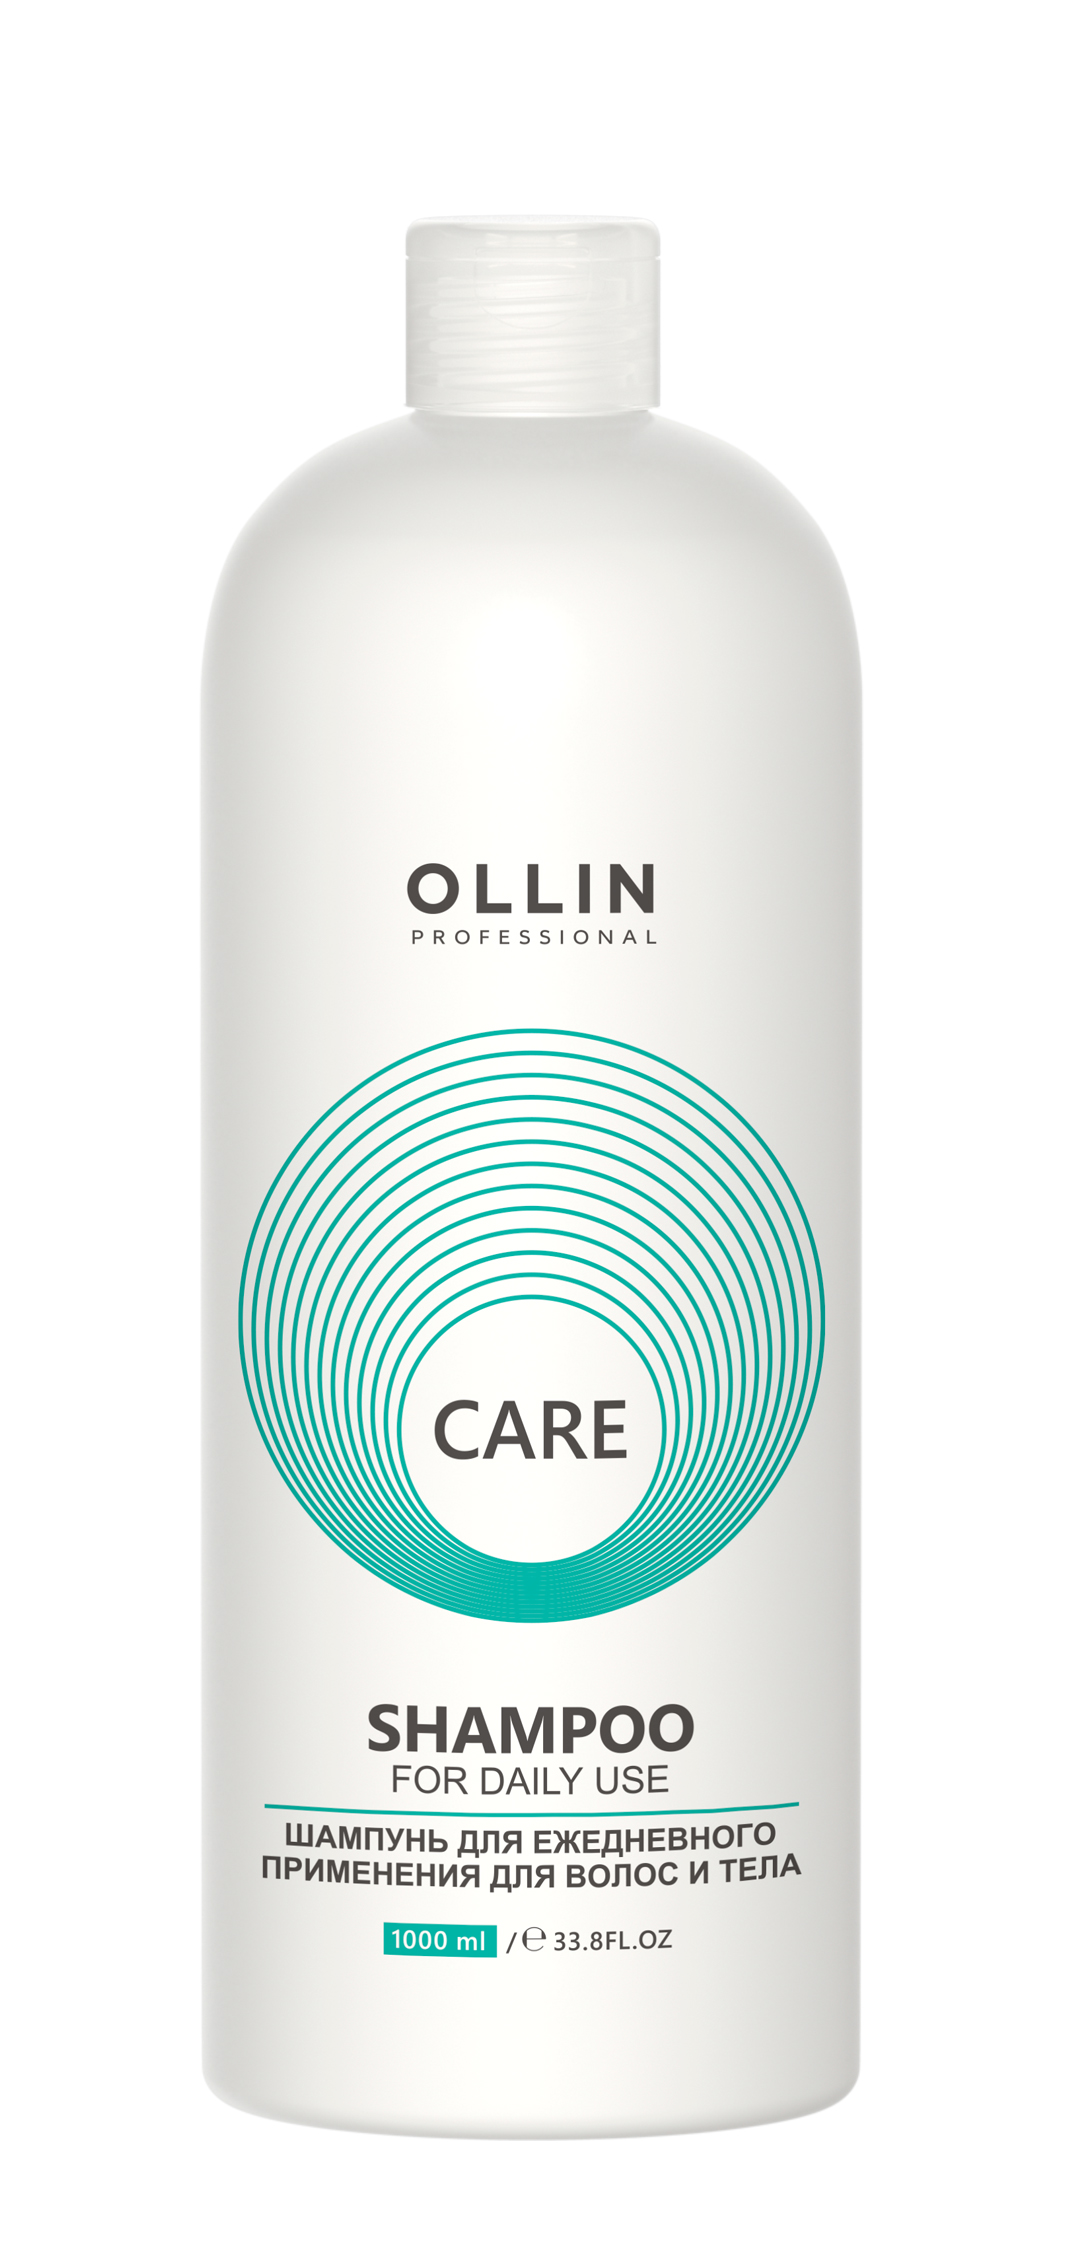 OLLIN CARE Шампунь для ежедневного применения для волос и тела 1000мл